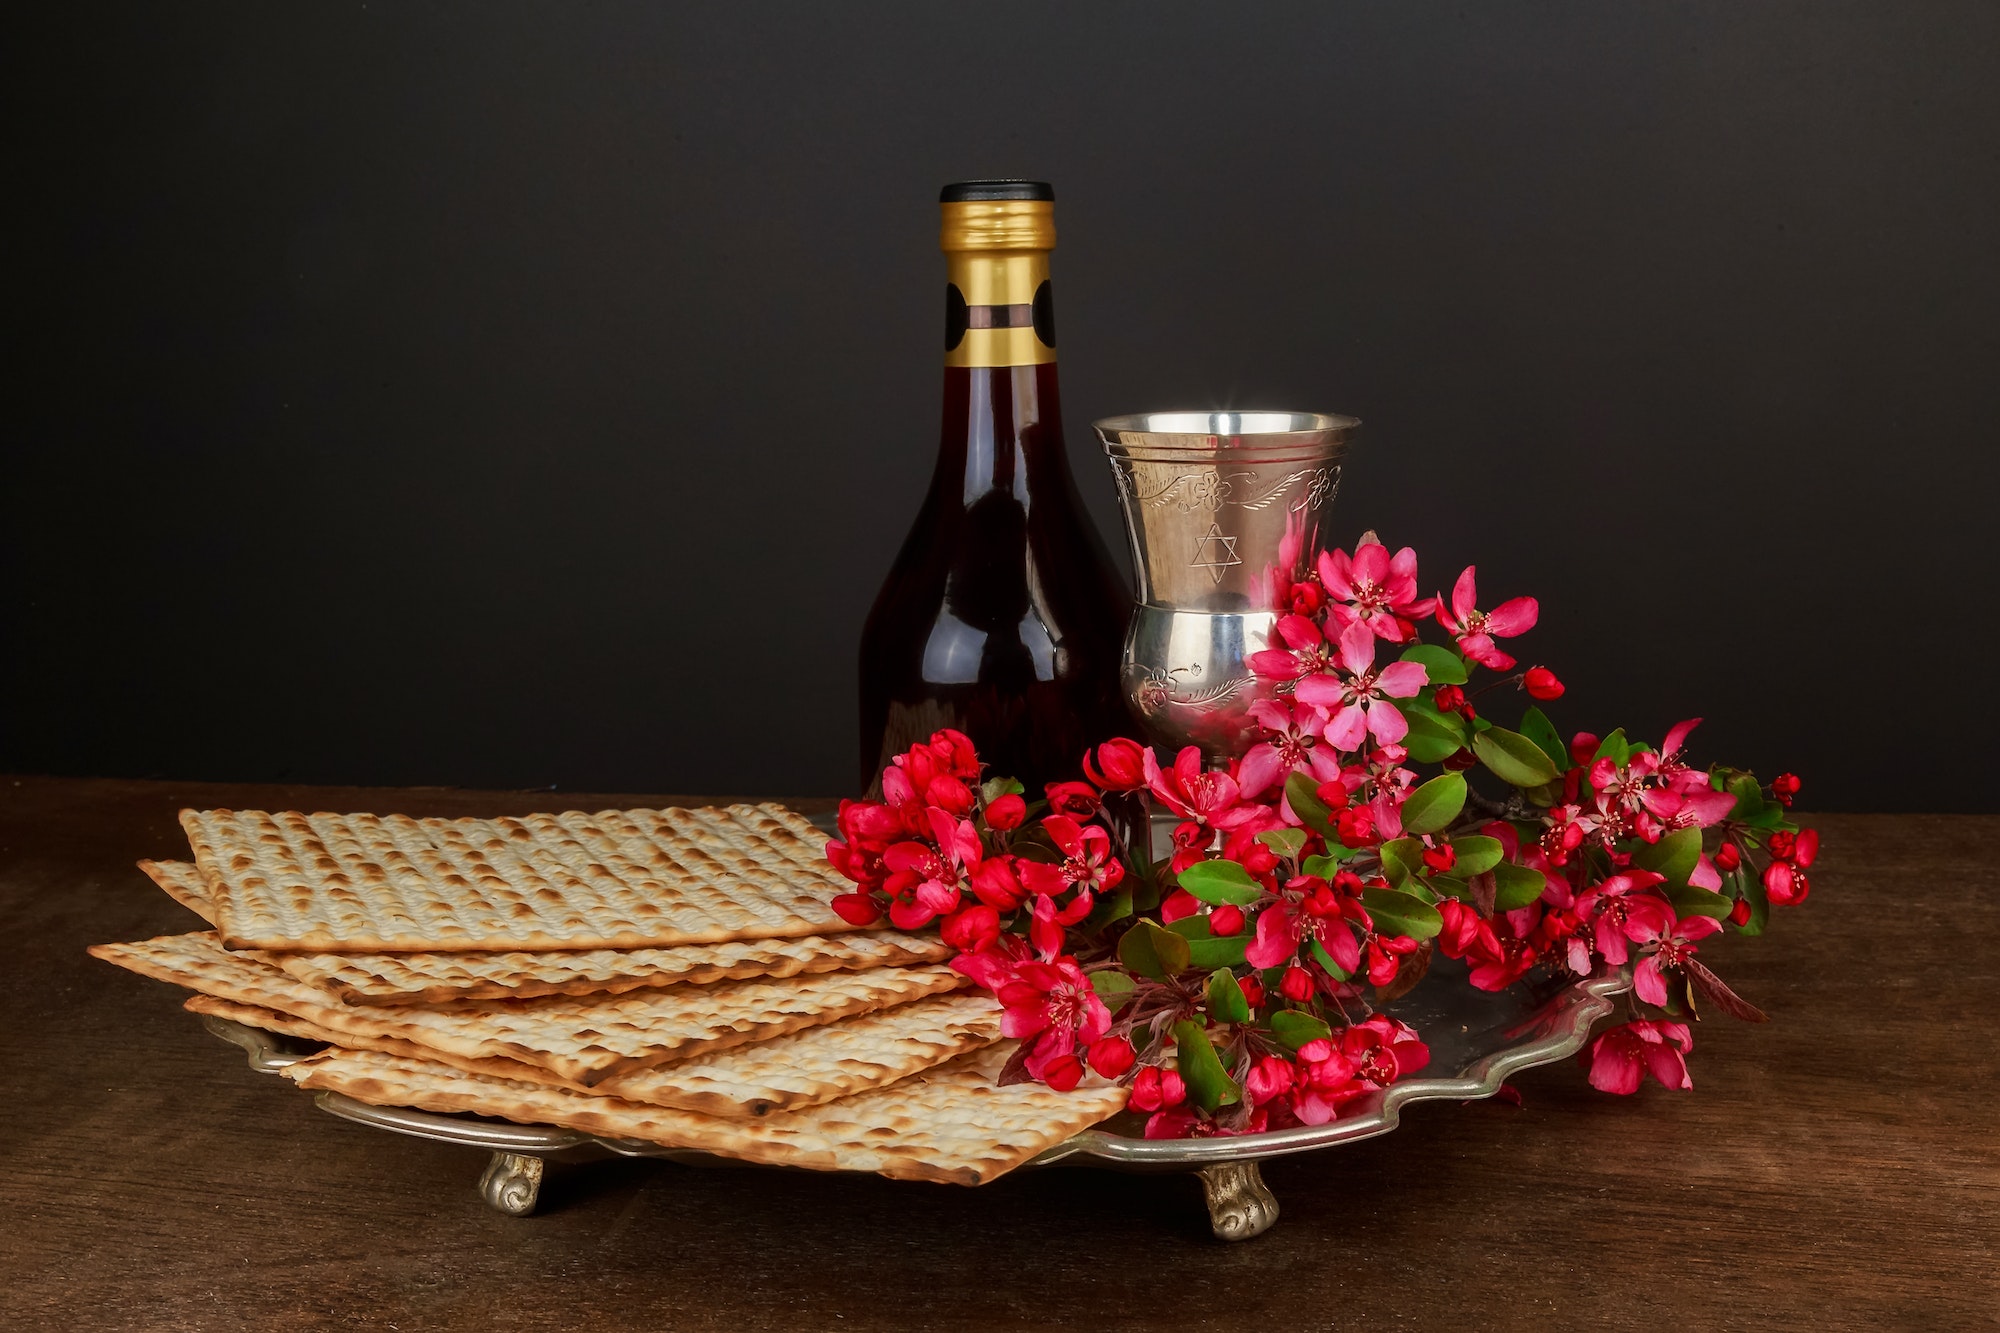 Pesach matzo passover with wine and matzoh jewish passover bread